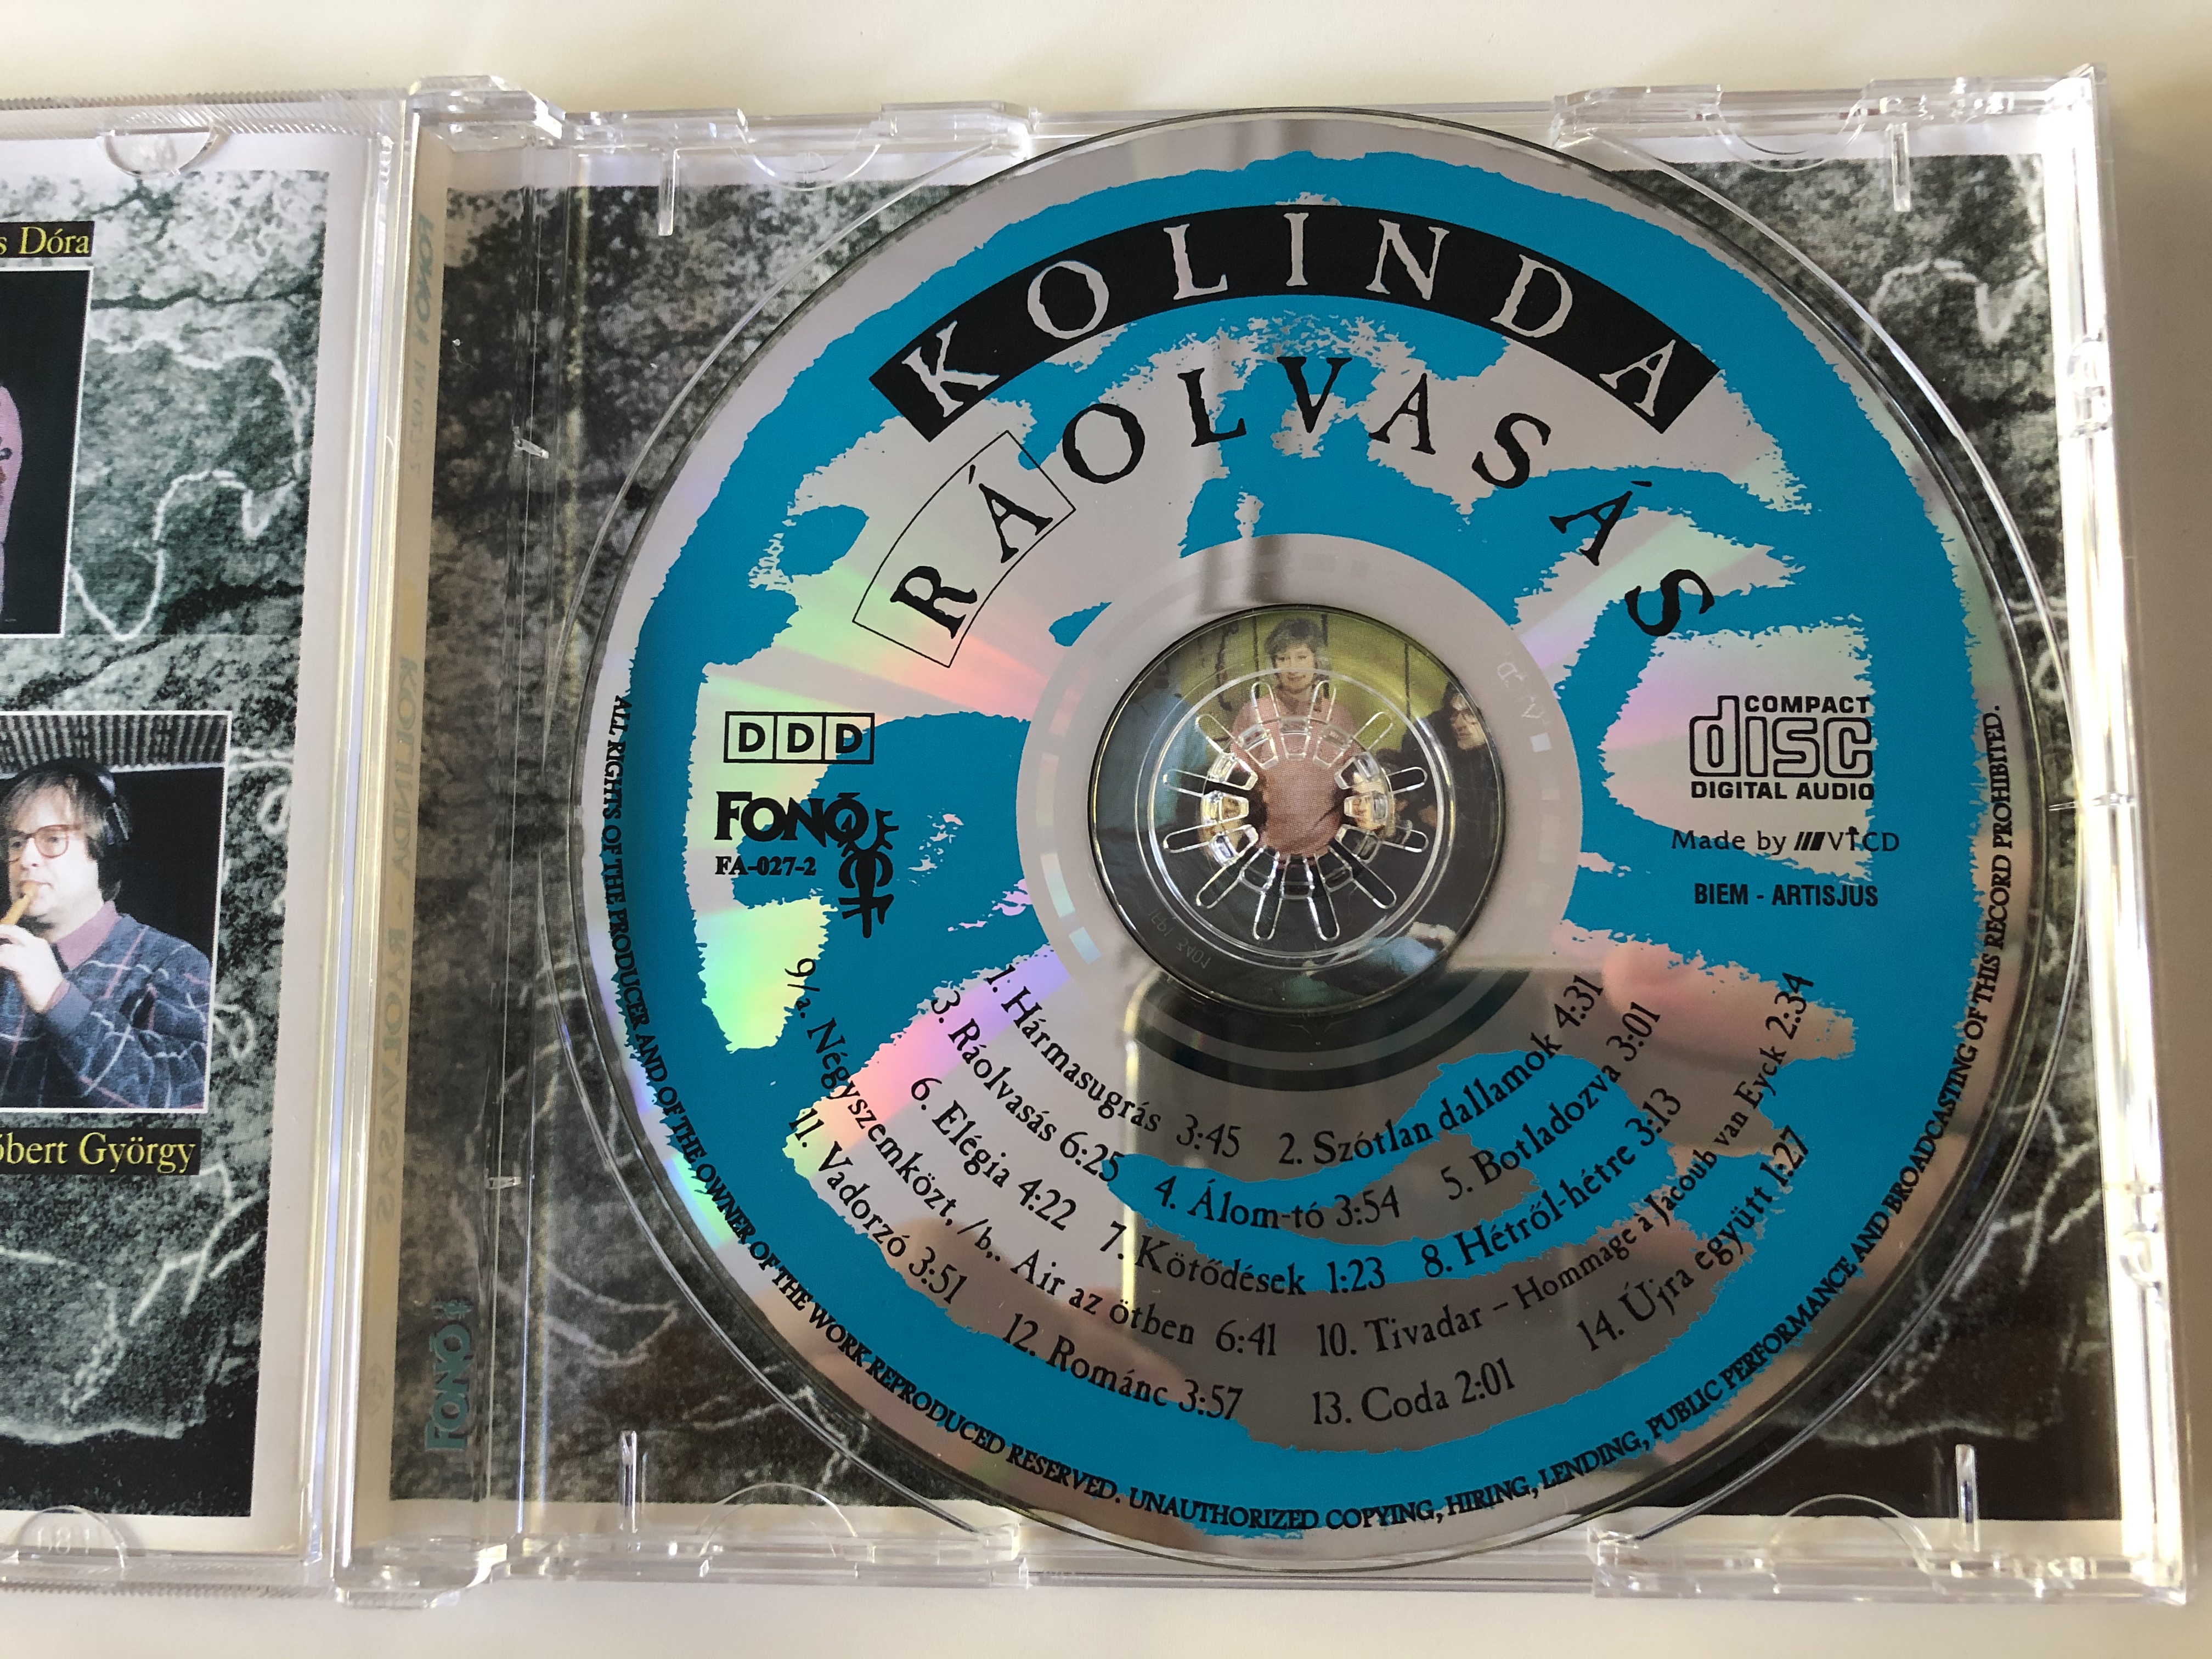 kolinda-r-olvas-s-fon-records-audio-cd-1997-fa-027-2-5-.jpg